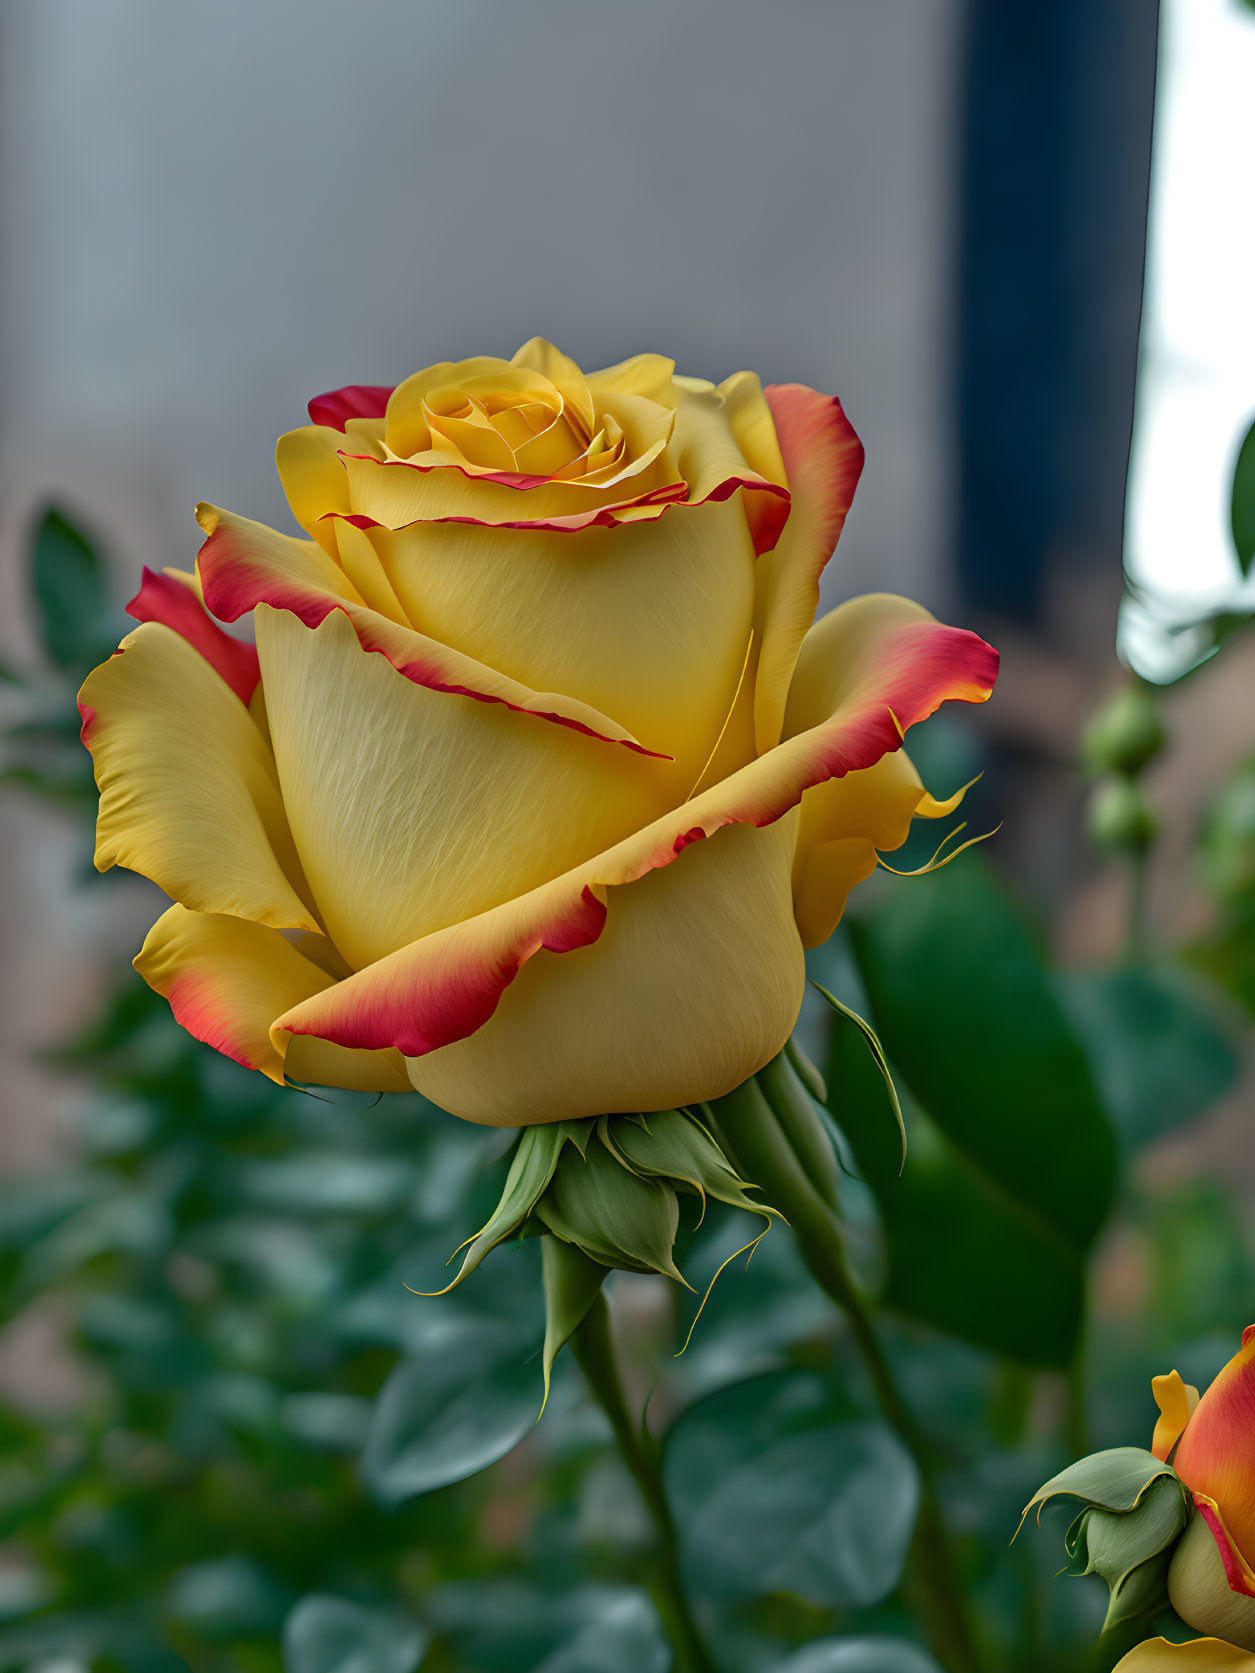 Wonderfull yellow rose